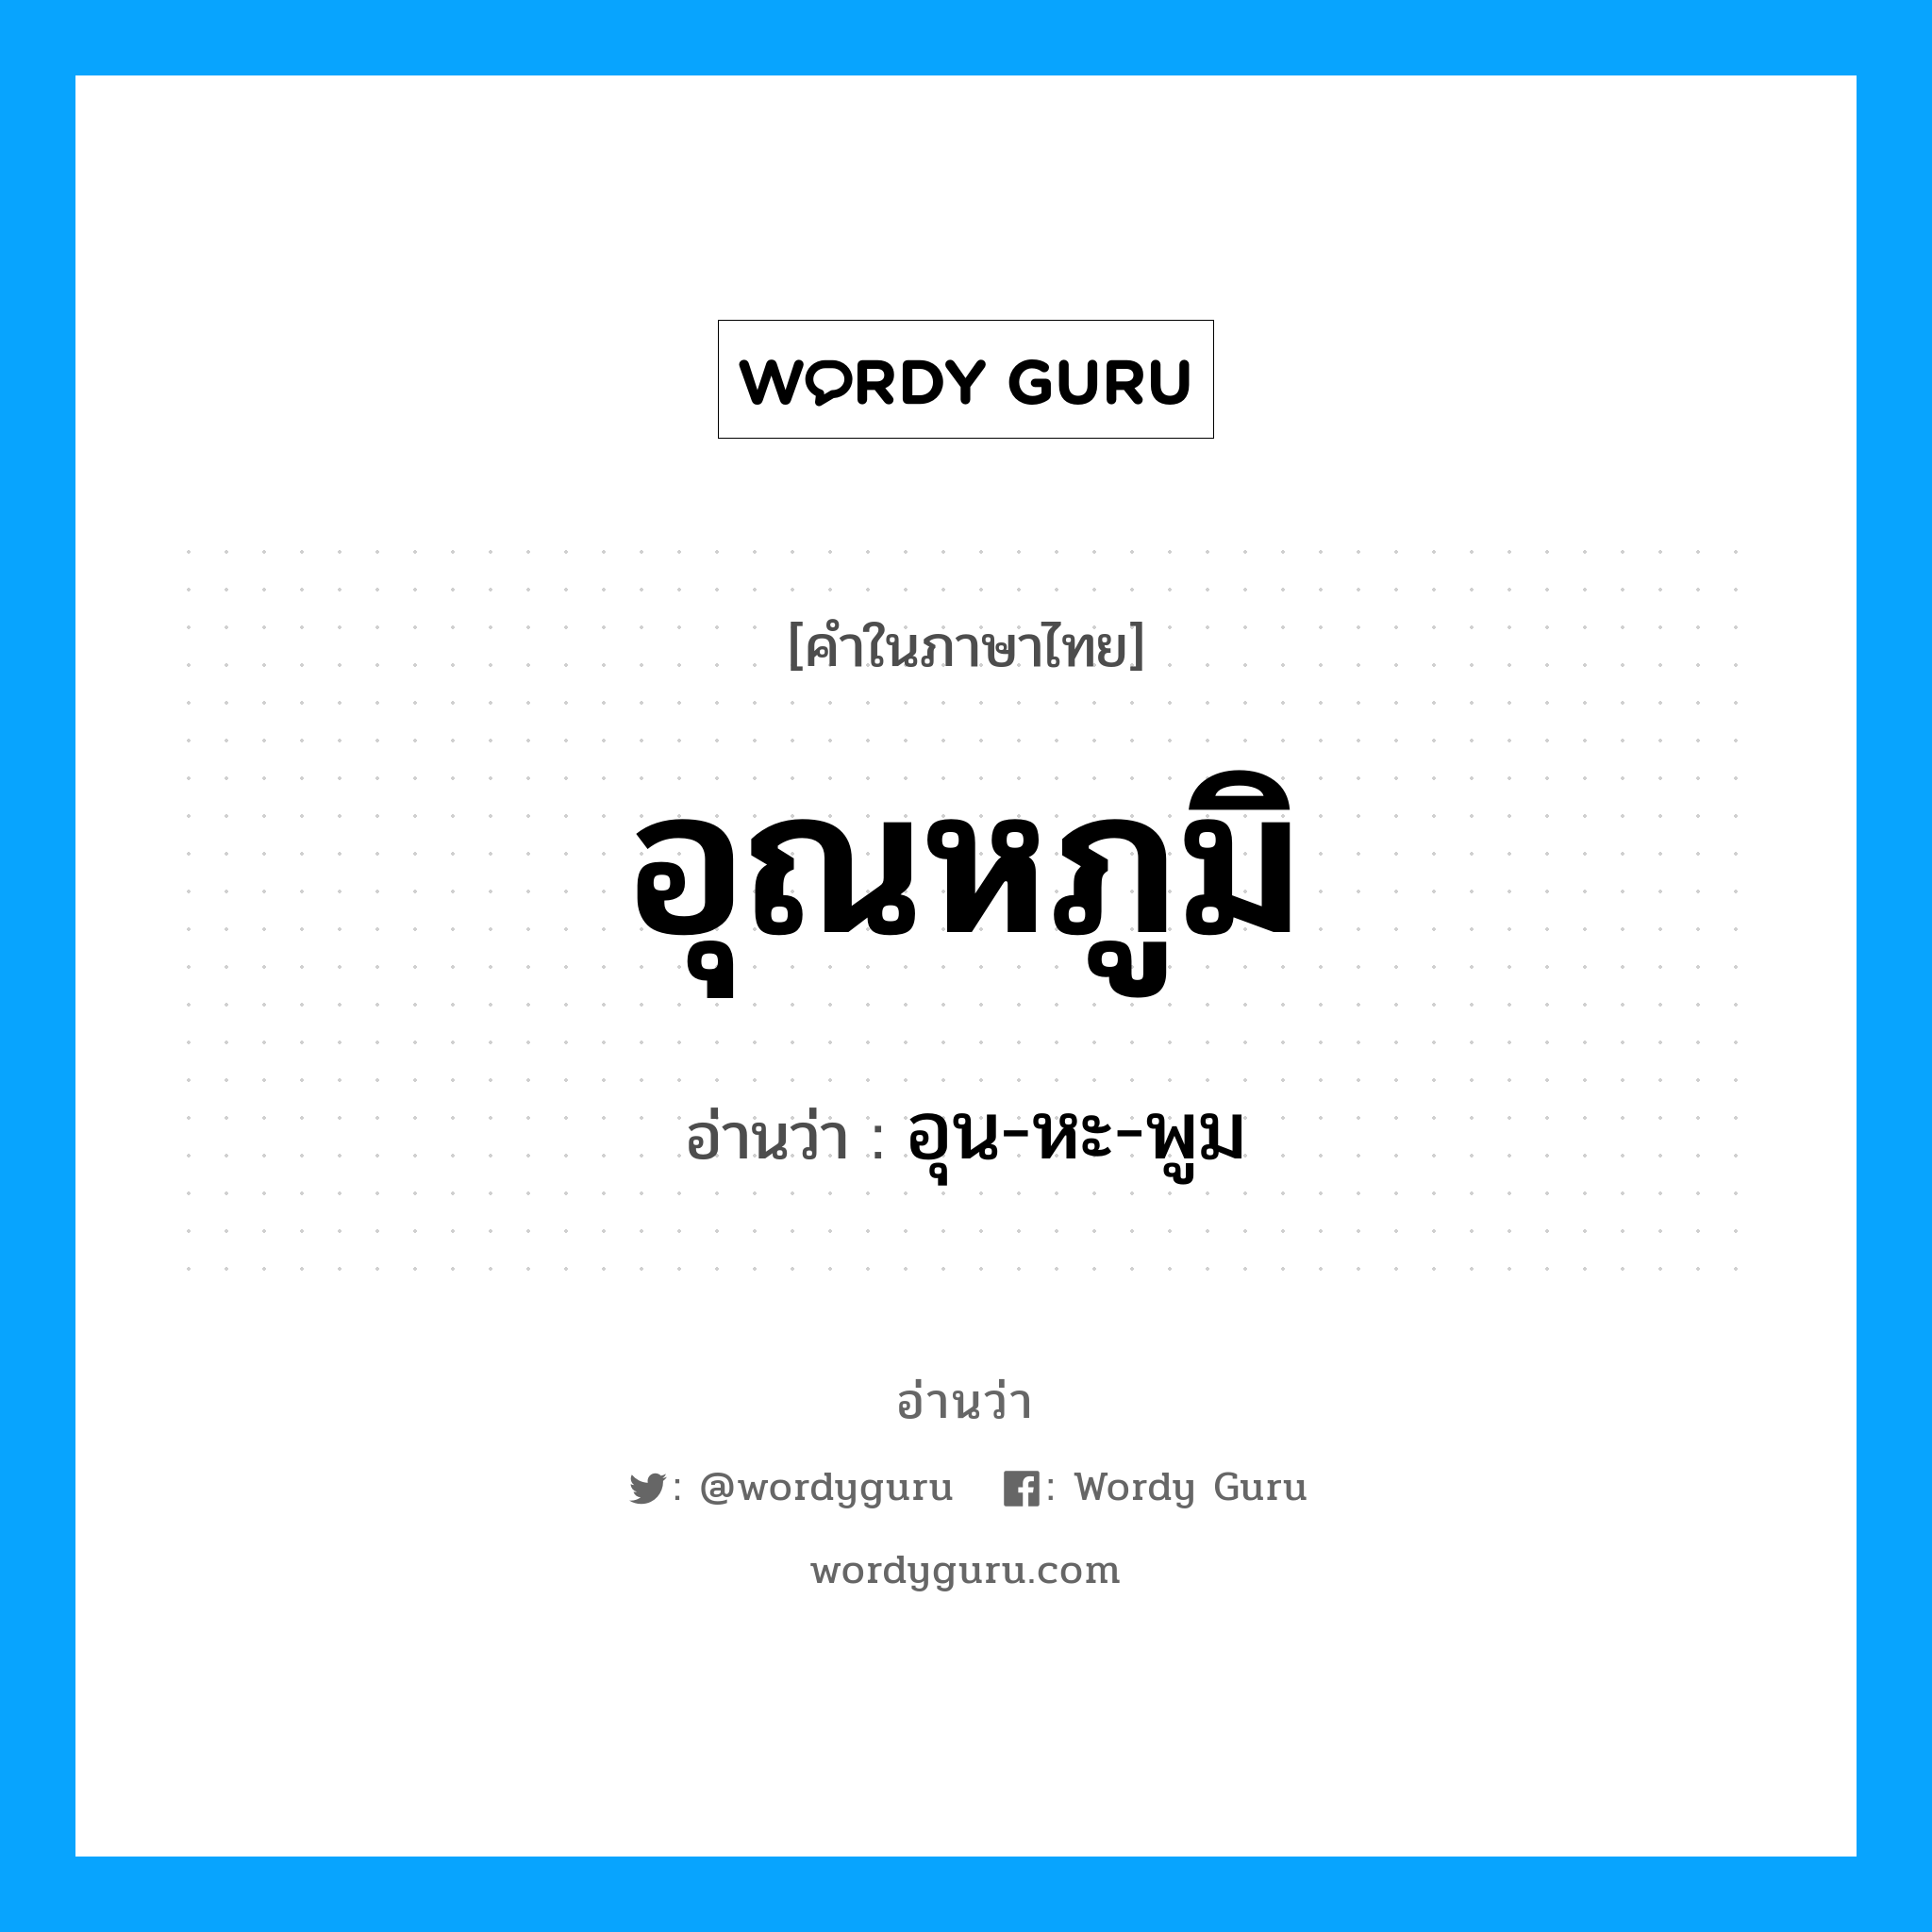 อุน-หะ-พูม เป็นคำอ่านของคำไหน?, คำในภาษาไทย อุน-หะ-พูม อ่านว่า อุณหภูมิ